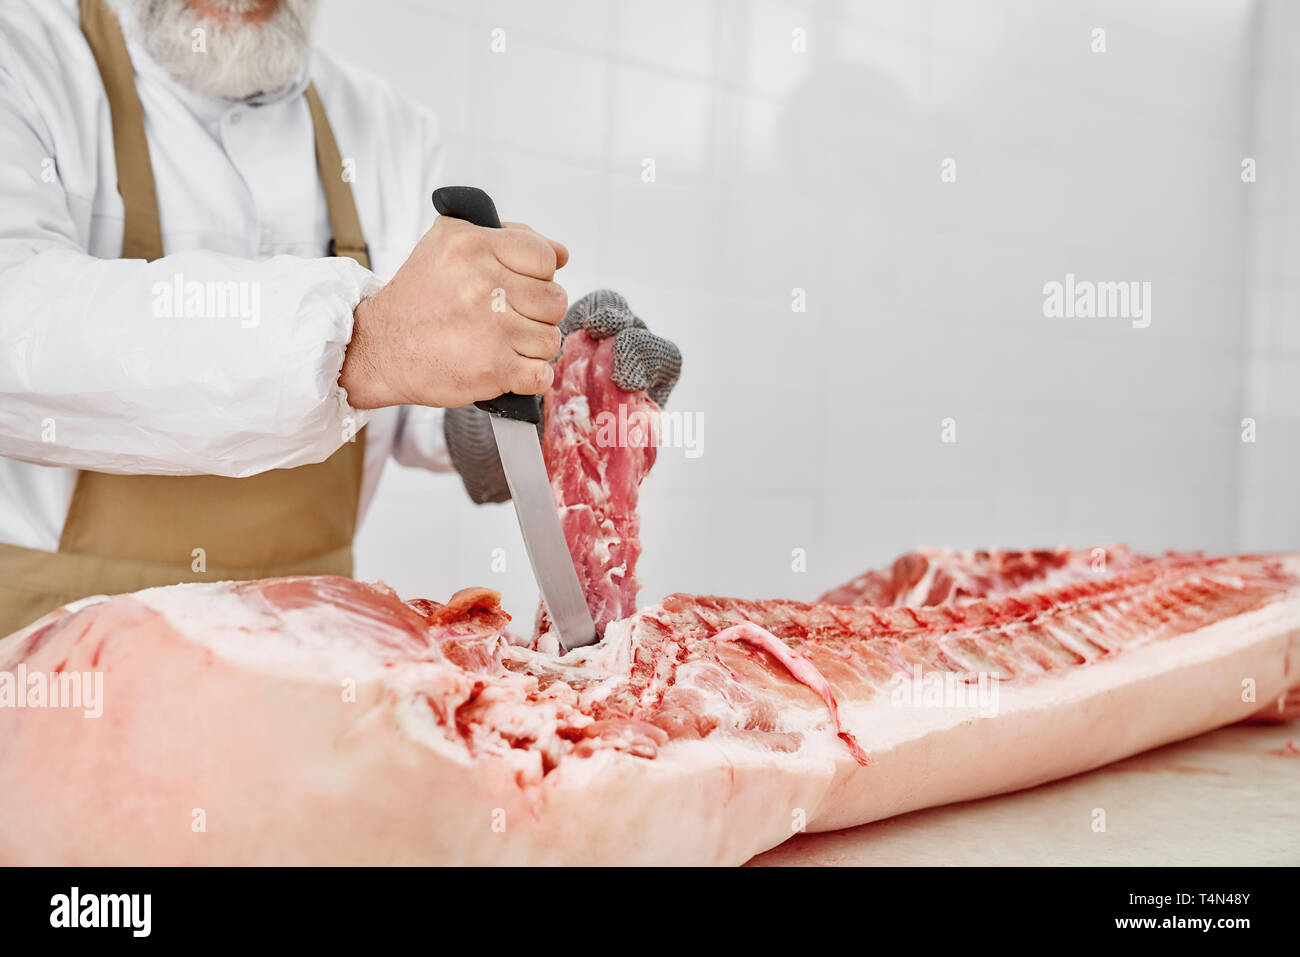 Nahaufnahme von Raw gehacktes Schweinefleisch Schlachtkörper und männlichen Händen mit Messer. Metzger in weißer Uniform und braune Schürze in Fleisch shop arbeiten, Schneiden frisches, rohes Fleisch. Fleisch Fertigung. Stockfoto